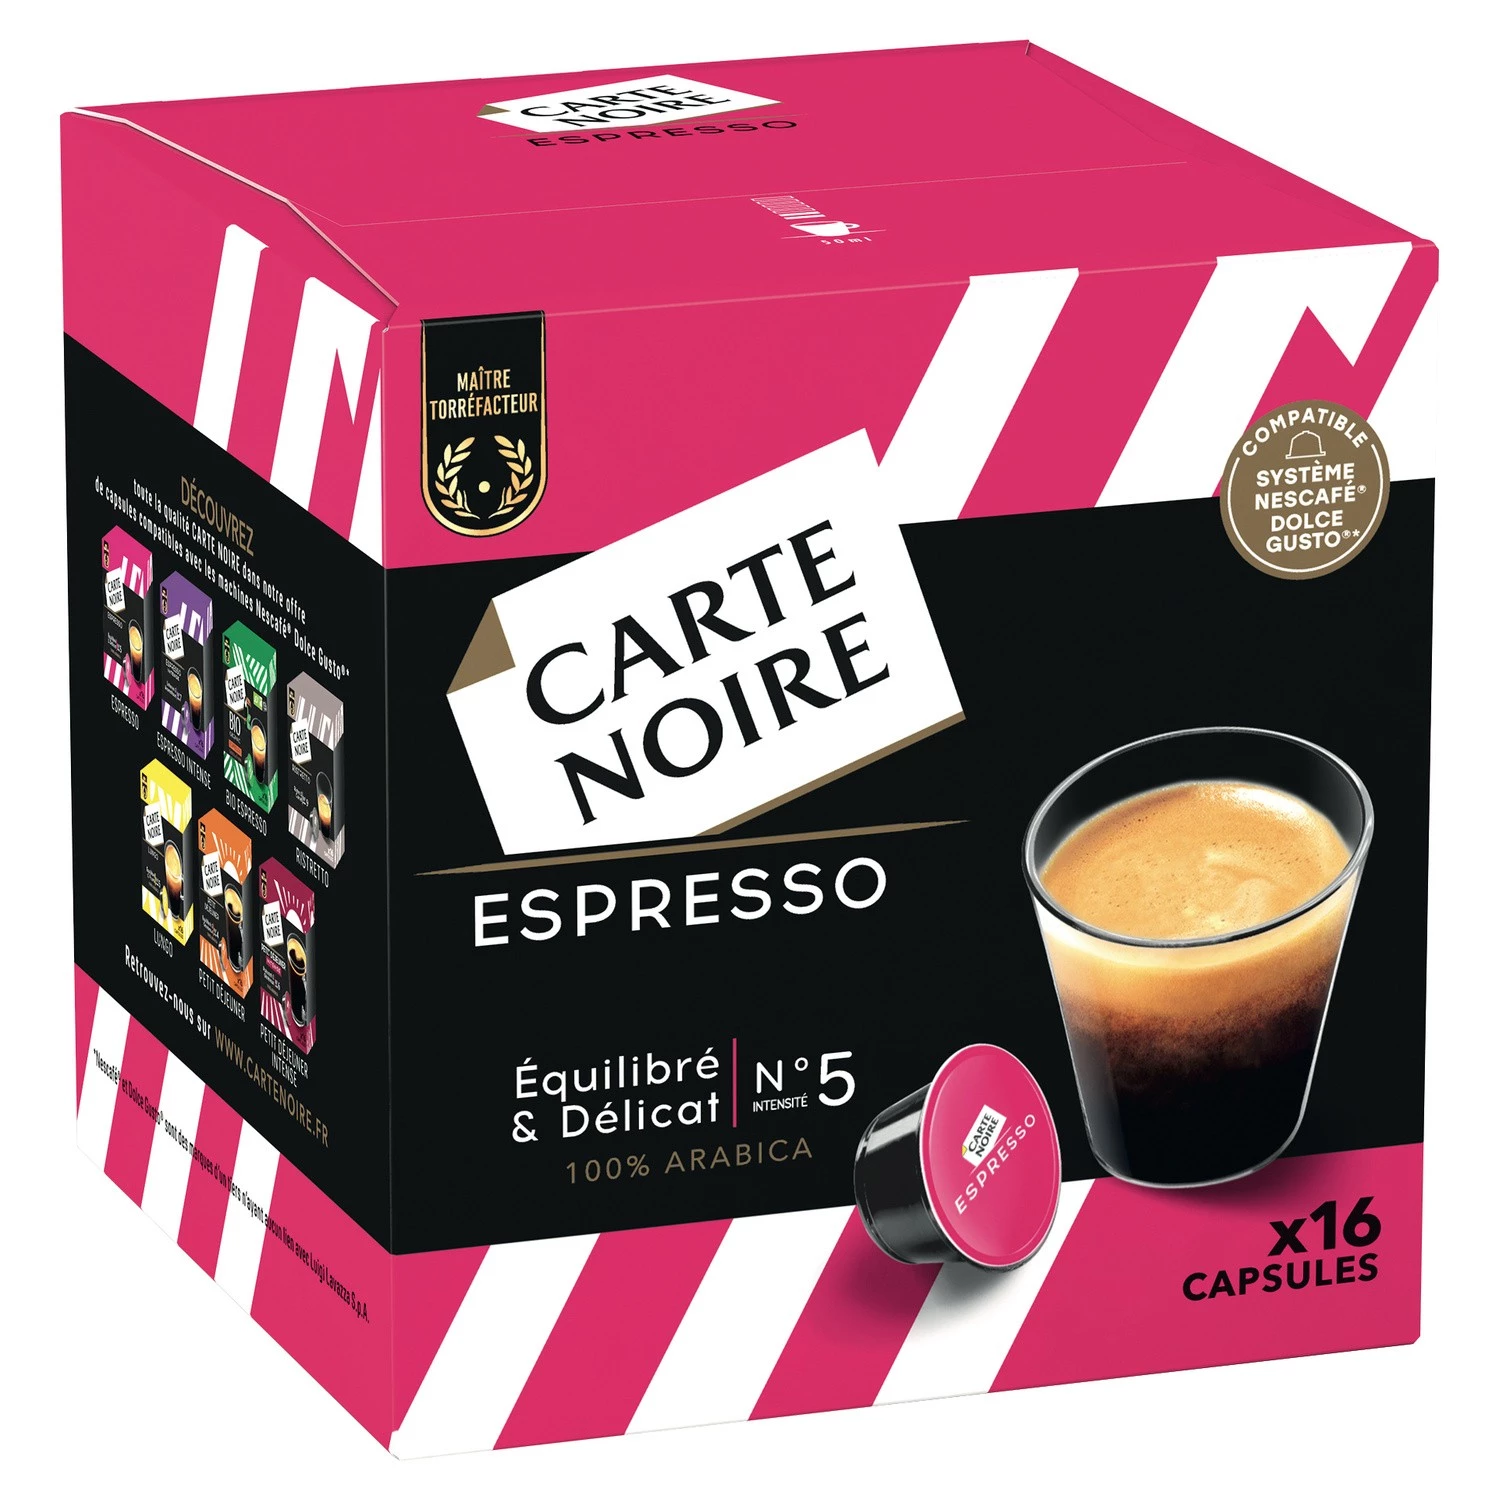 Café-espresso nr. 5 x16 capsules 128g - CARTE NOIRE